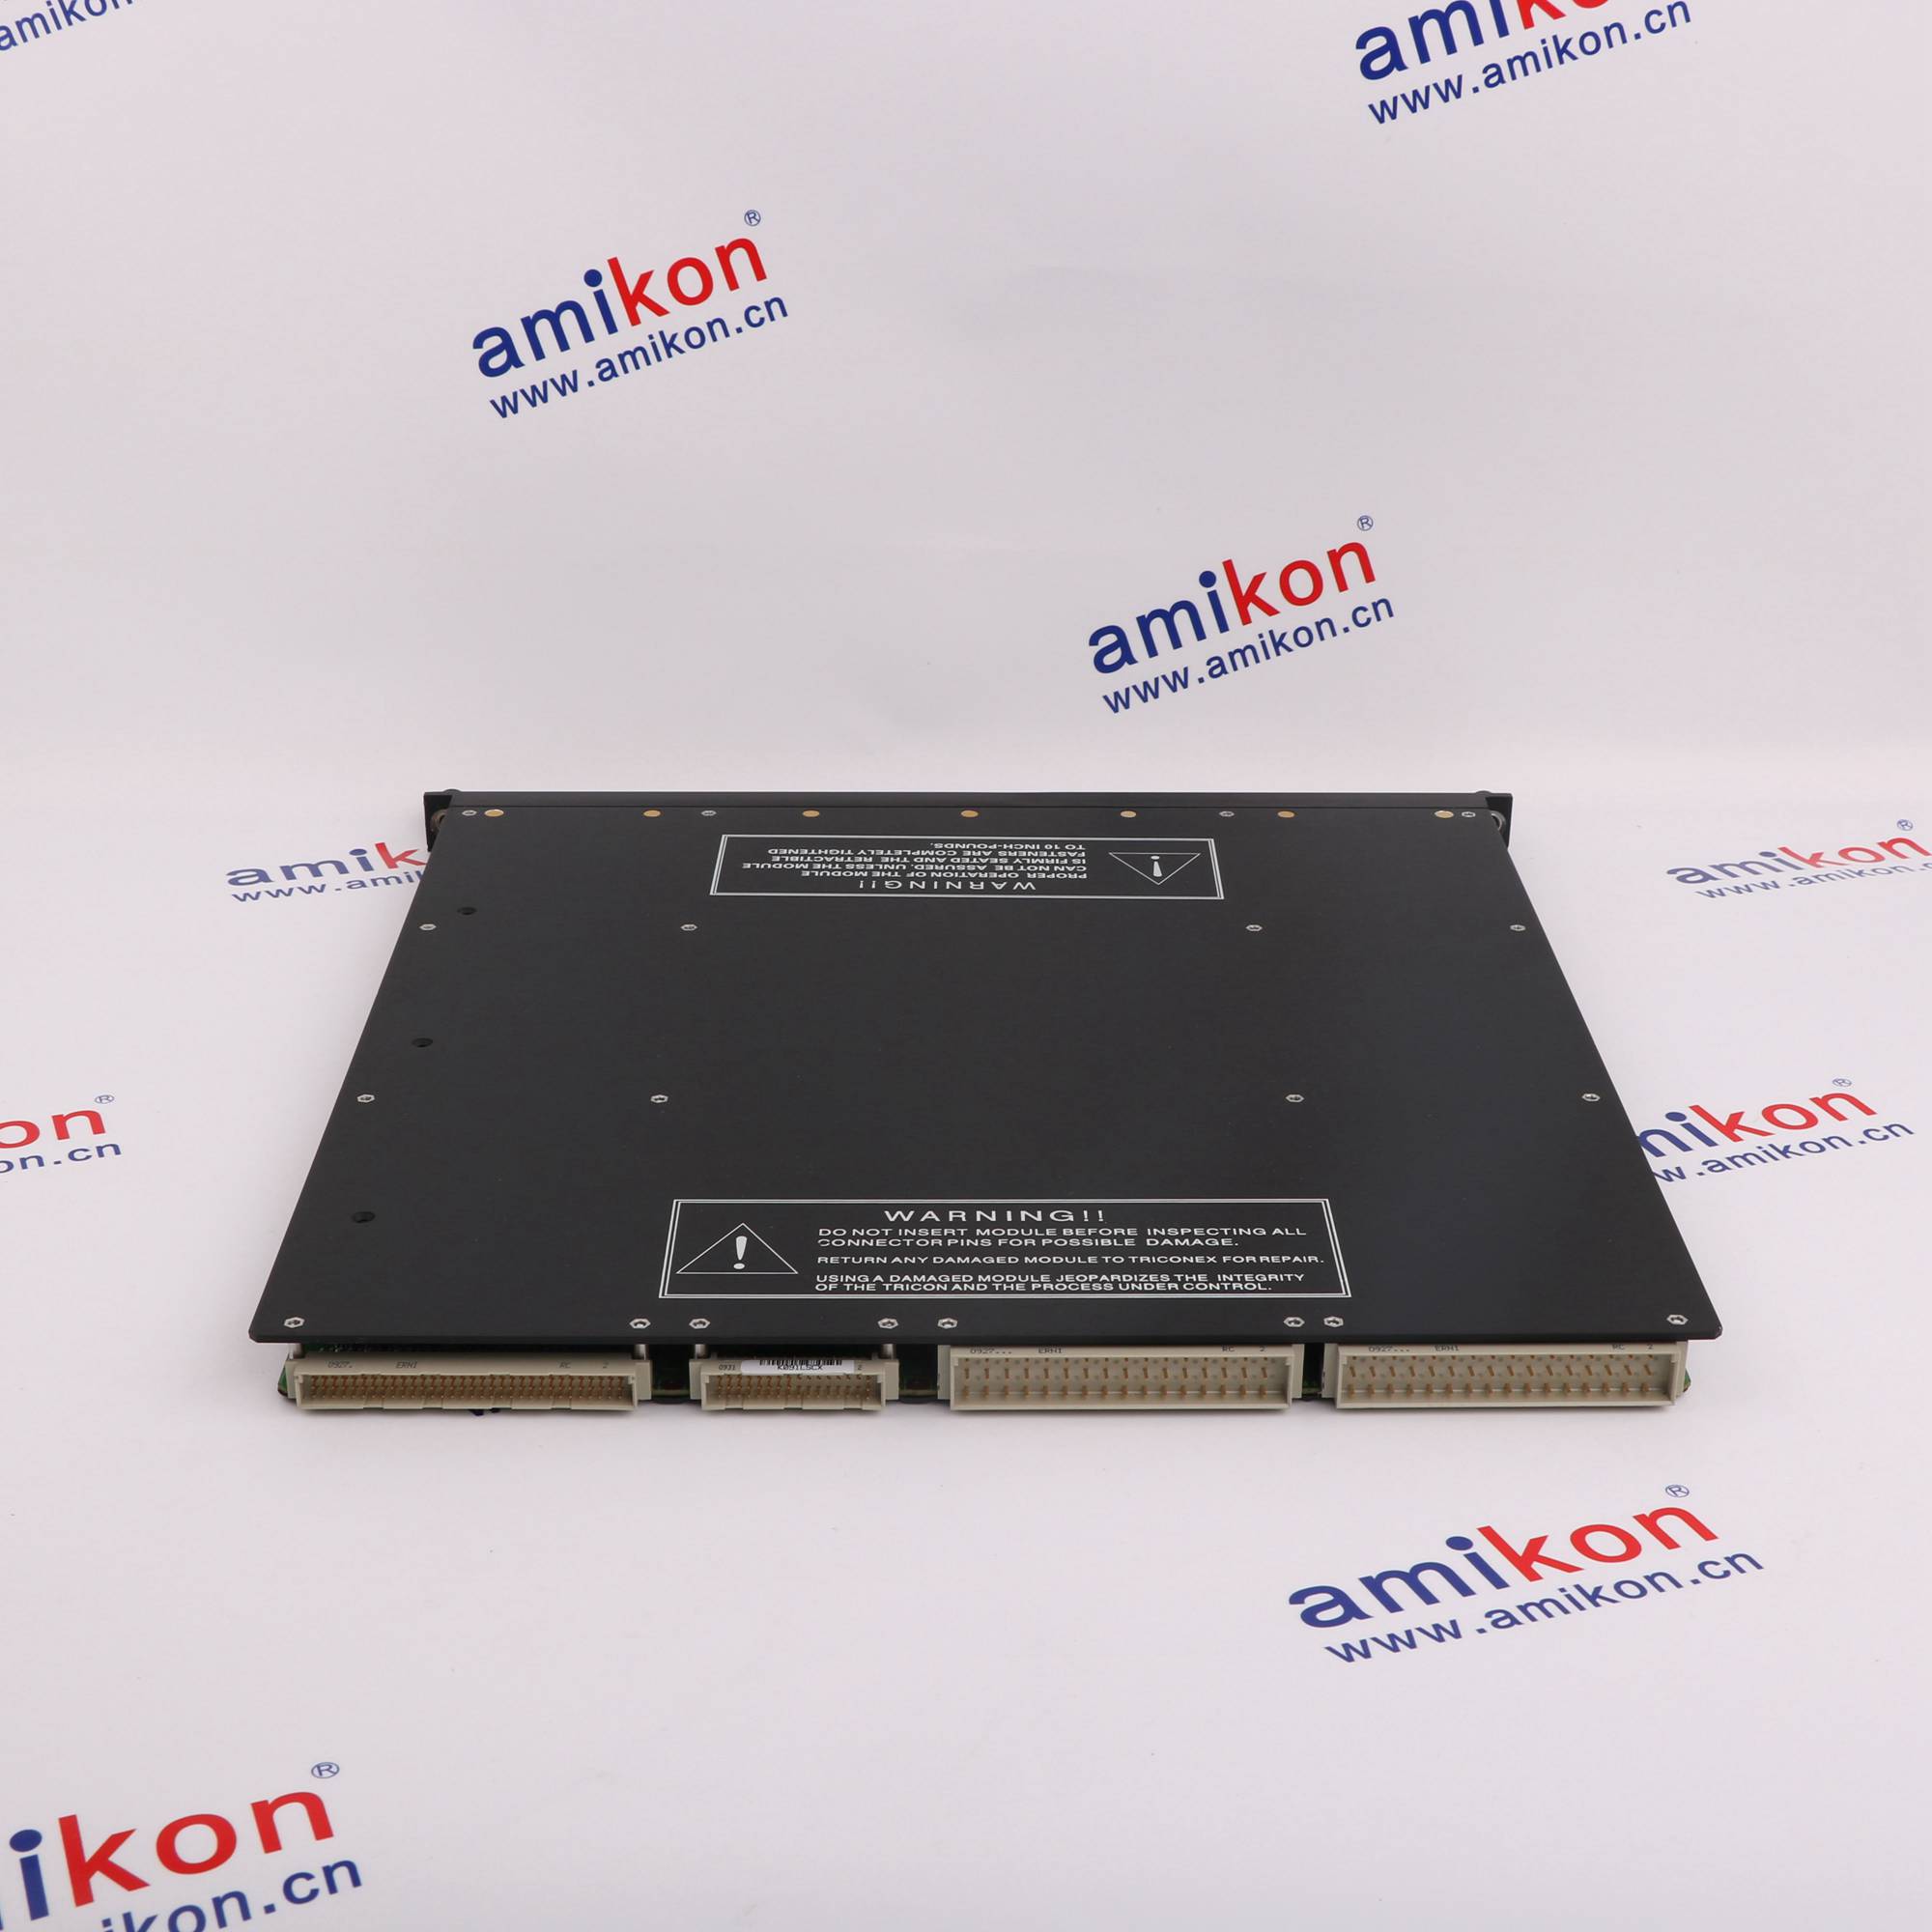 TRICONEX 3721 模拟输入主处理器